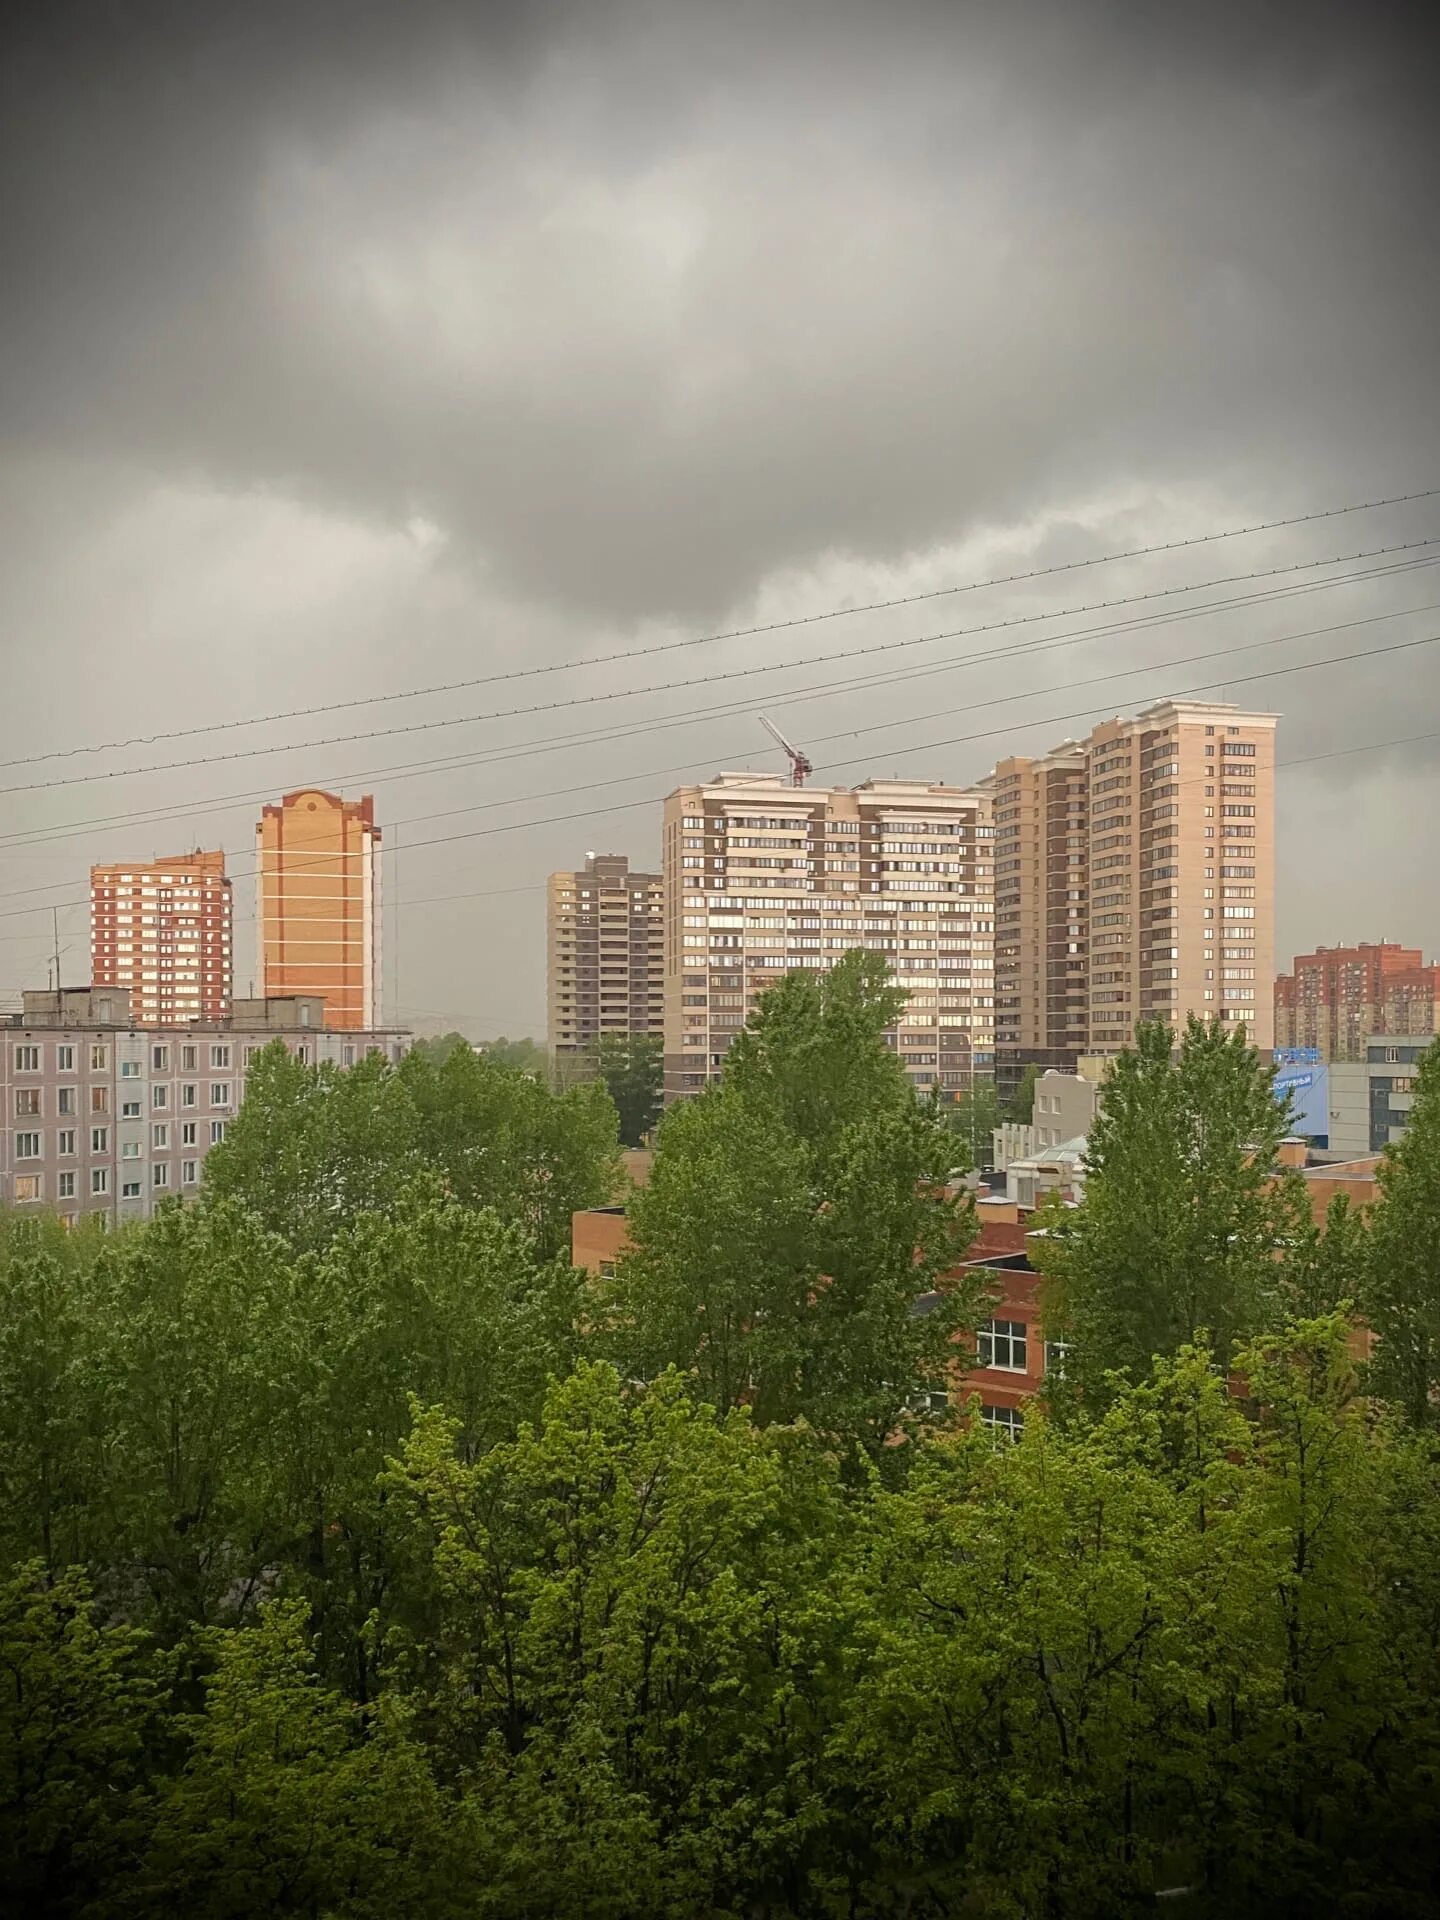 Bp vjtuj jryf 3. Район Балашиха в Москве. Вид из окна на город. Вид с моего окна. Вид из окна Балашиха.